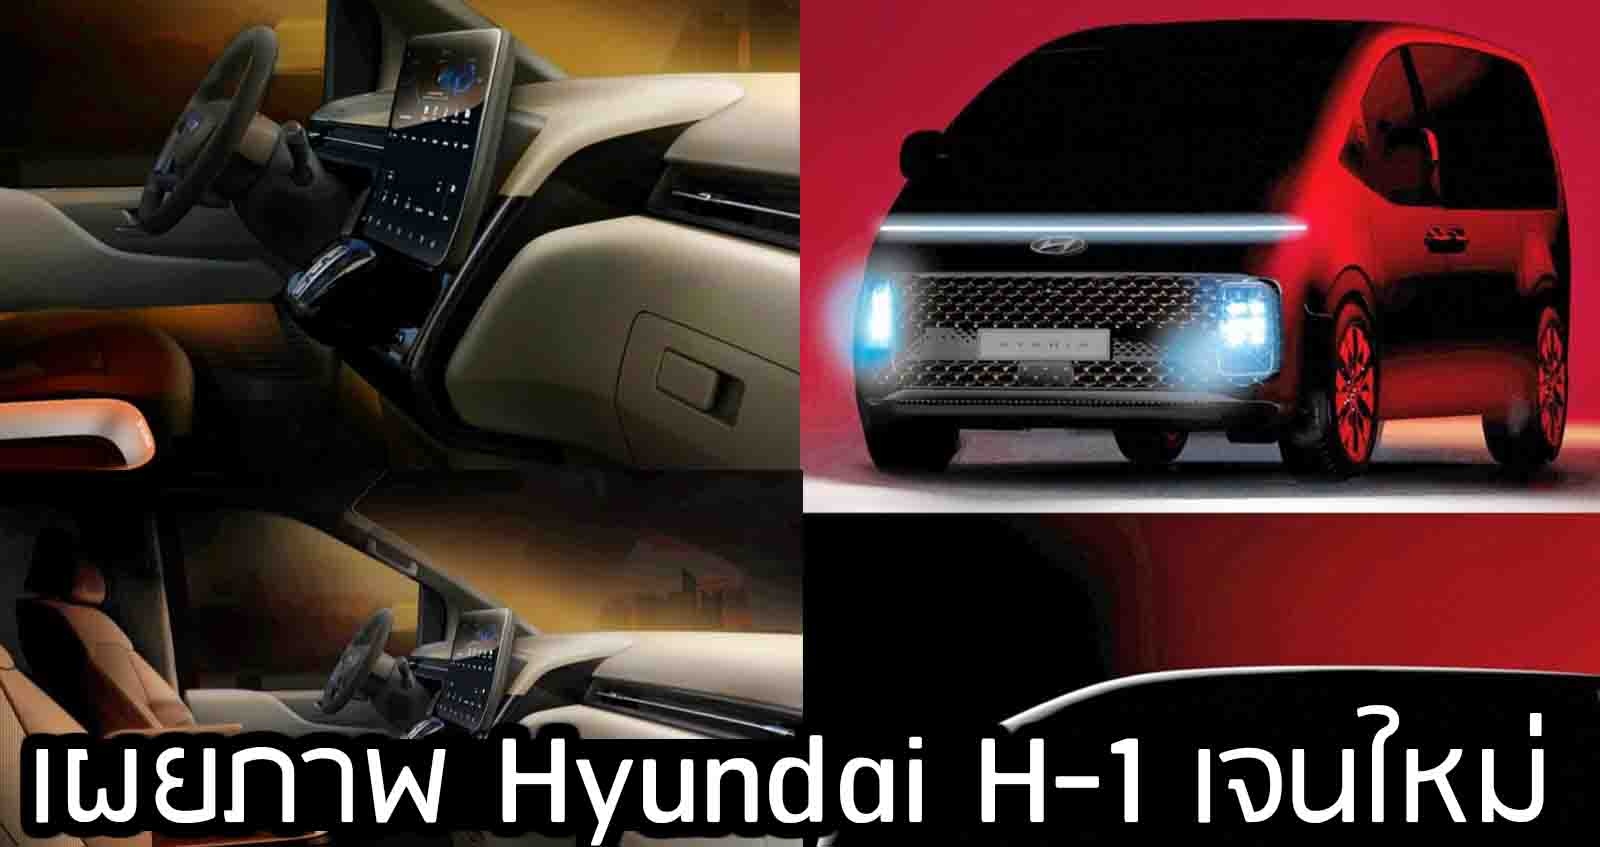 เผยภาพ Hyundai H-1 เจนใหม่ ปรับดีไซน์หมด เปิดตัวภายในปีนี้